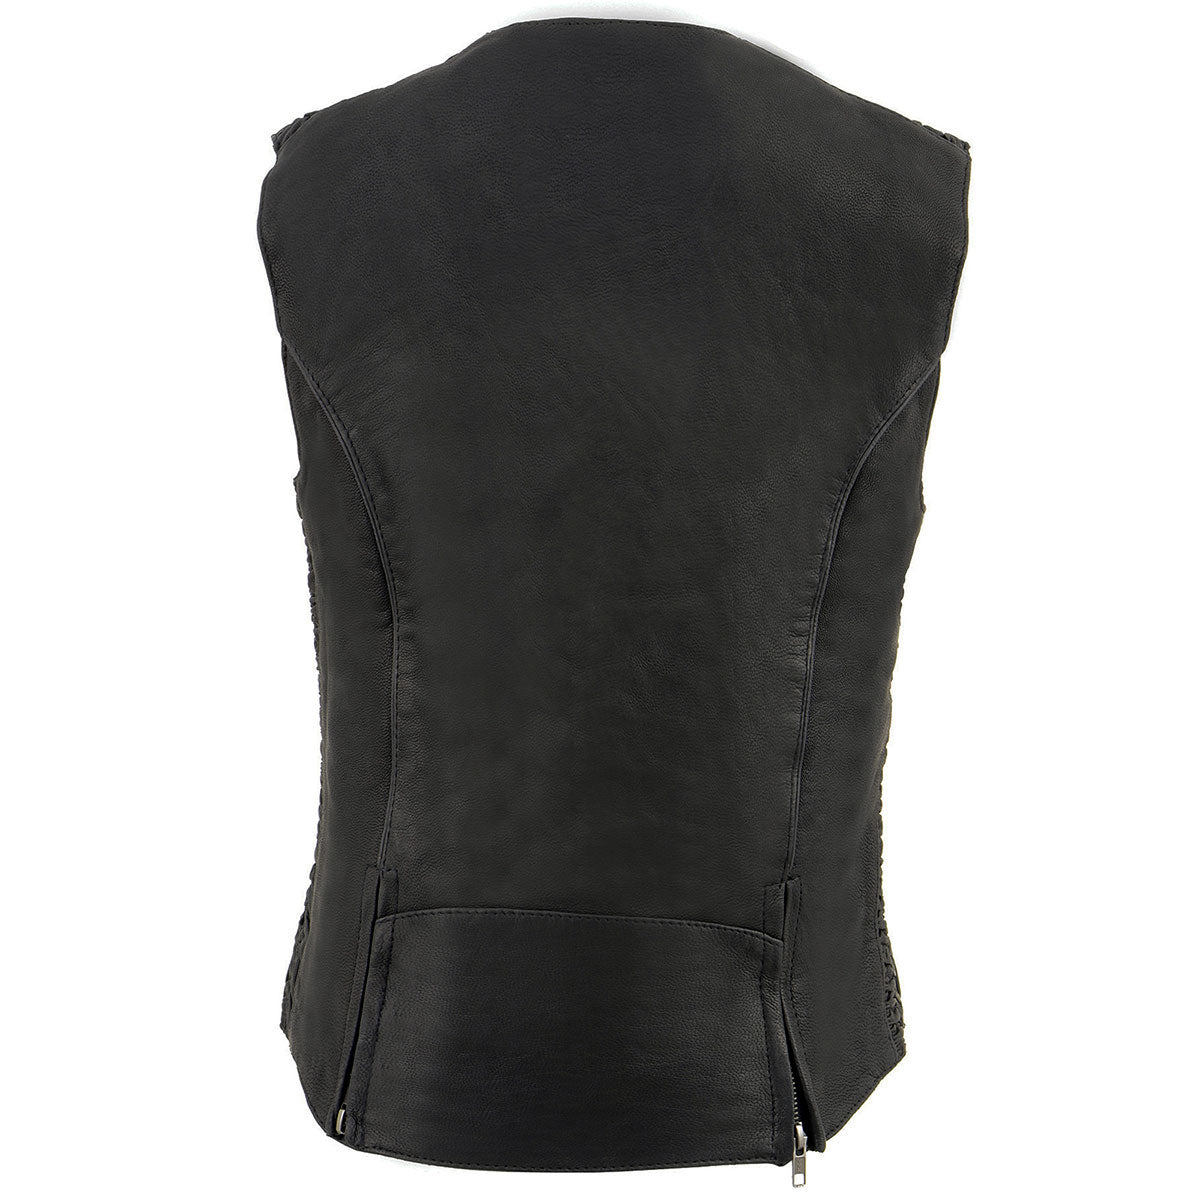 Milwaukee Leather MLL4571 Ladies 'Crinkled' Black Lightweight Leather Vest